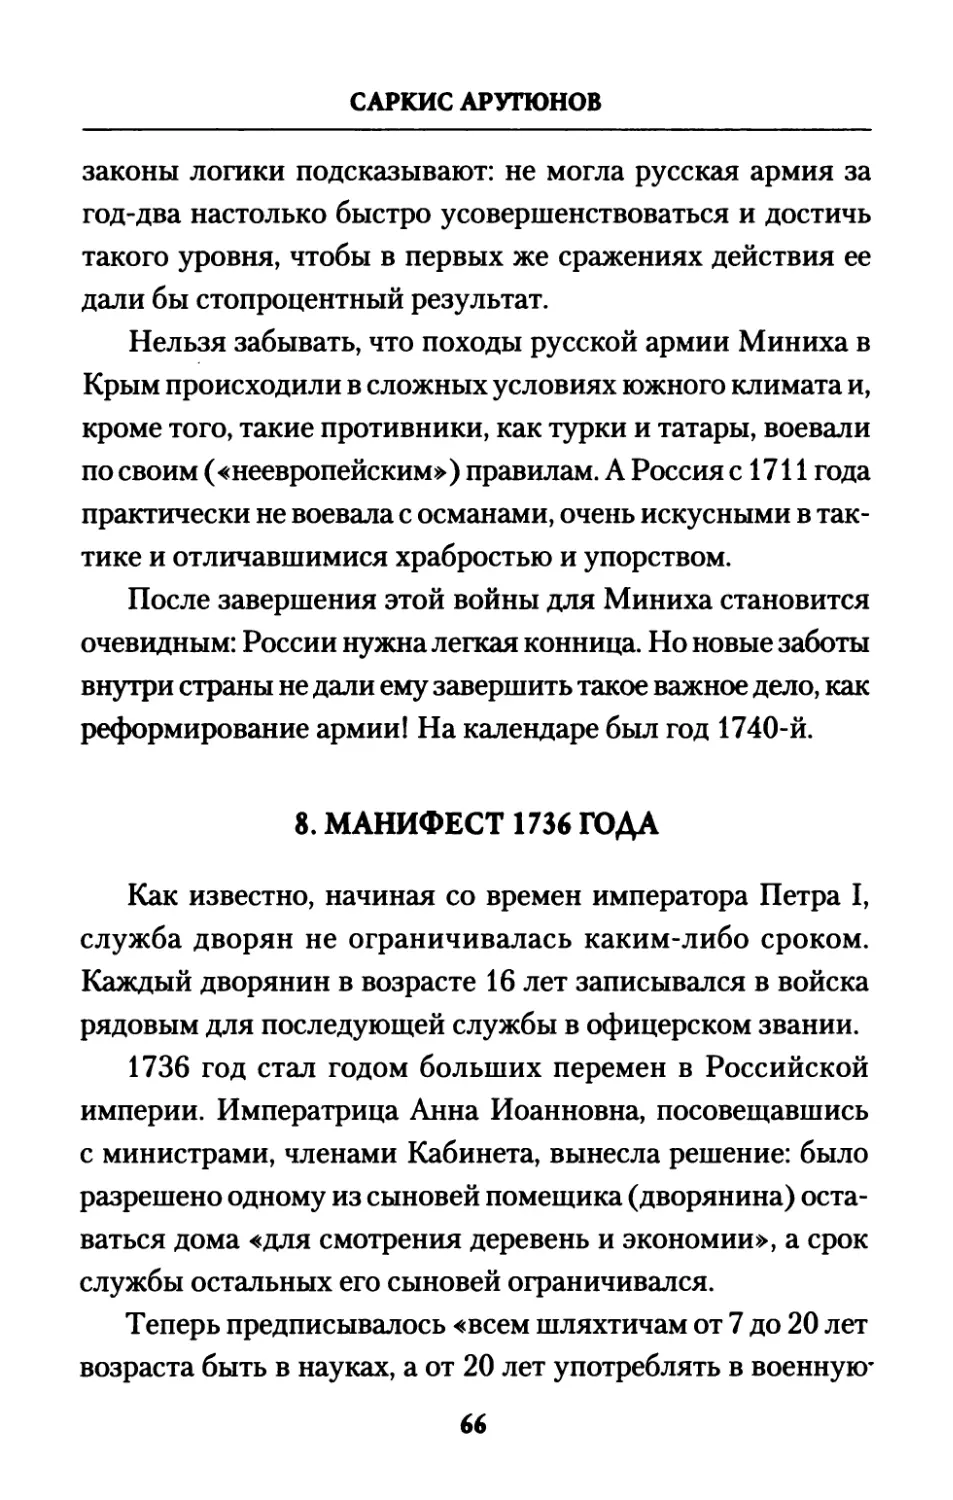 8.  Манифест  1736  года